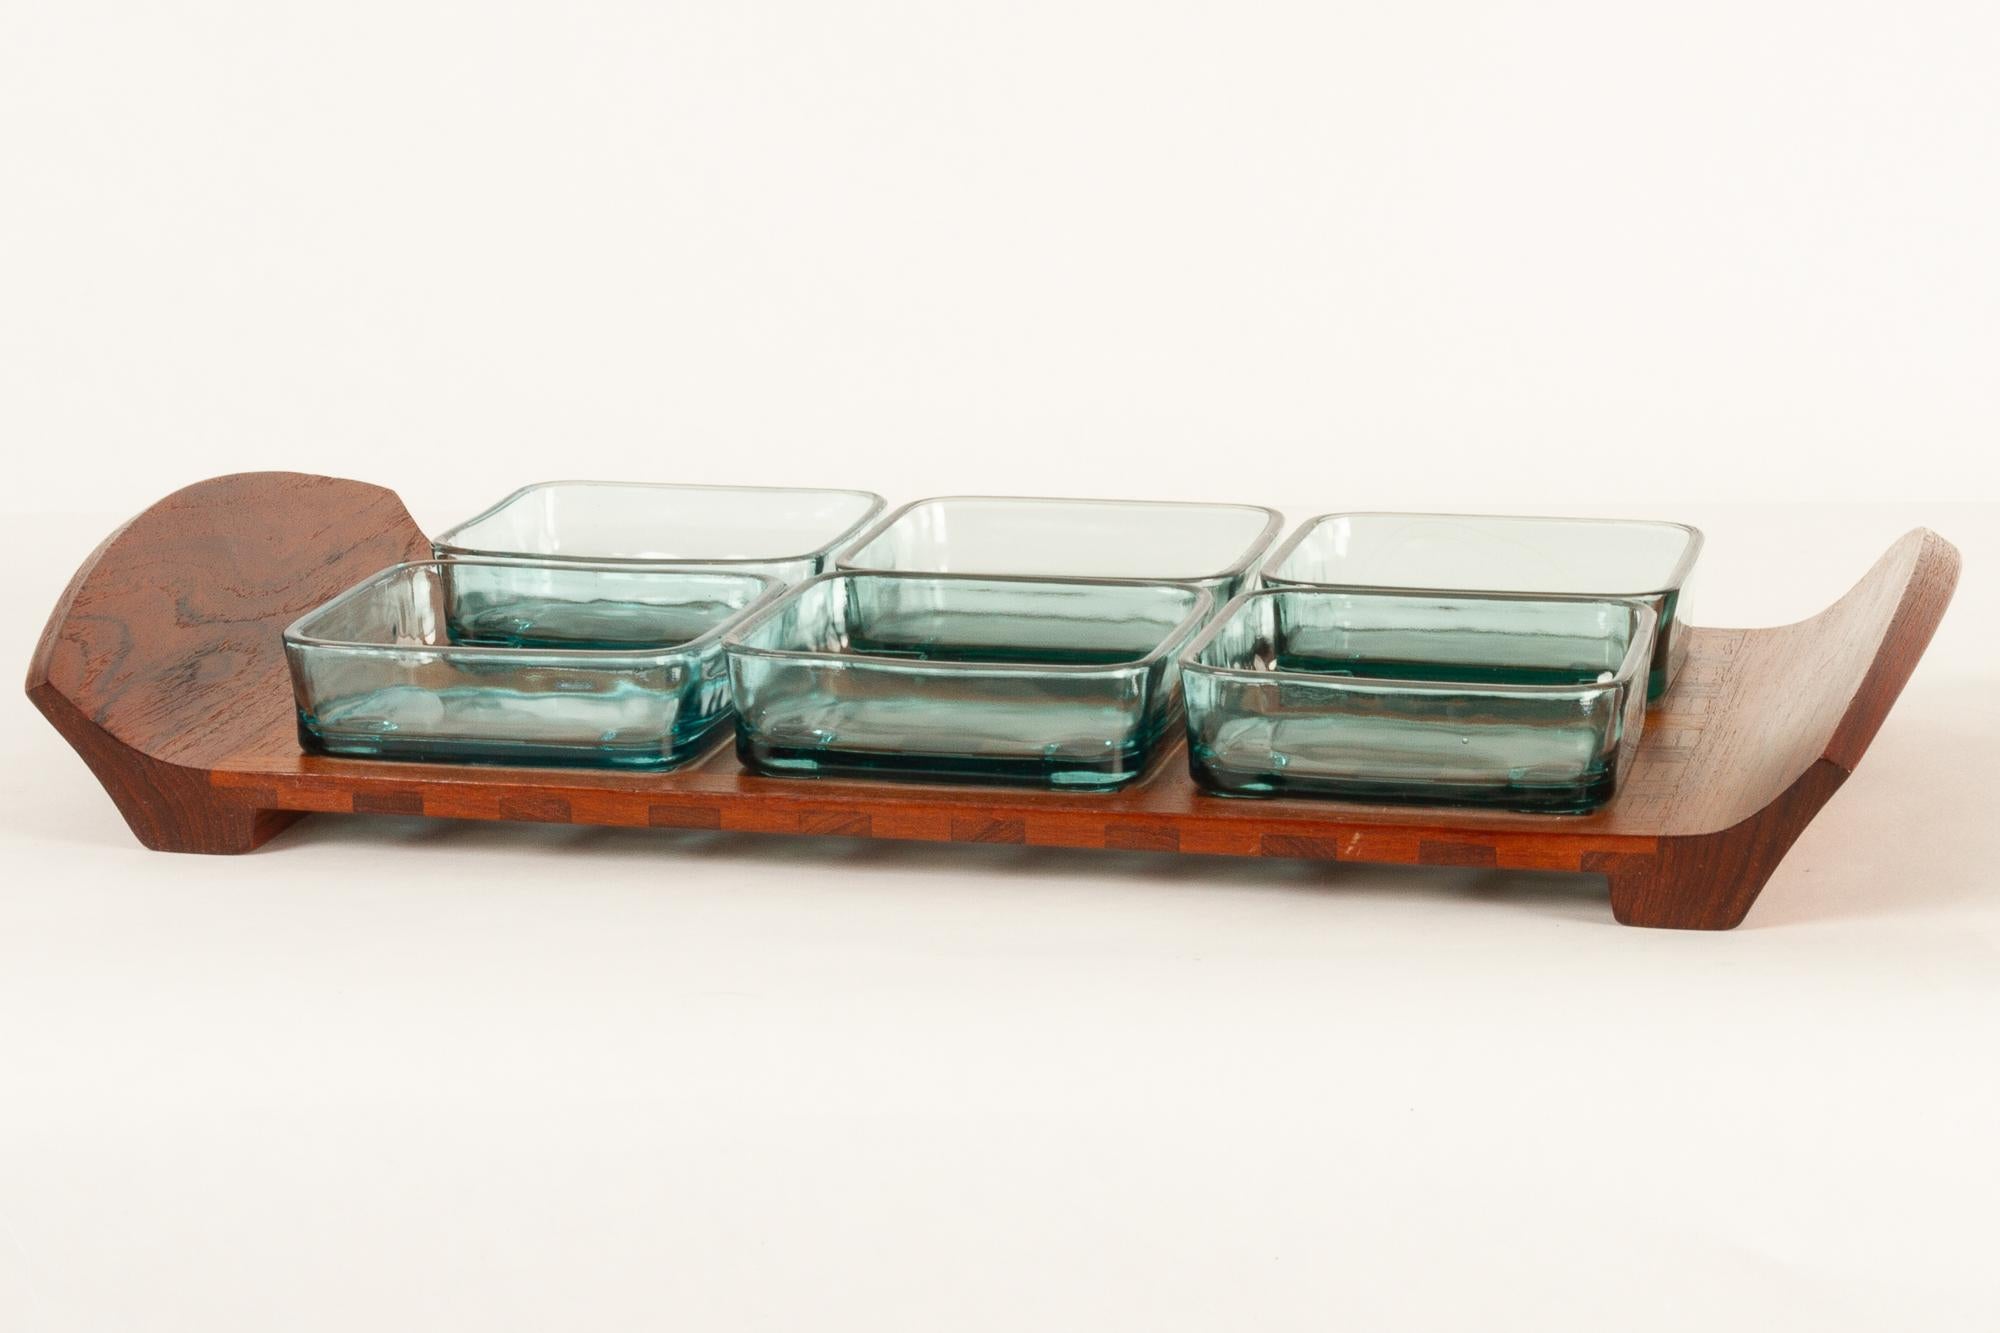 Dänisches Vintage-Tablett aus Teakholz mit Glasschalen von Jens Harald Quistgaard für IHQ Dansk Designs, 1960er Jahre.
Serviertablett aus massivem Teakholz mit sechs grünen Glasschalen. Jede Schale hat Füße, die in das Gitter des Tabletts passen.